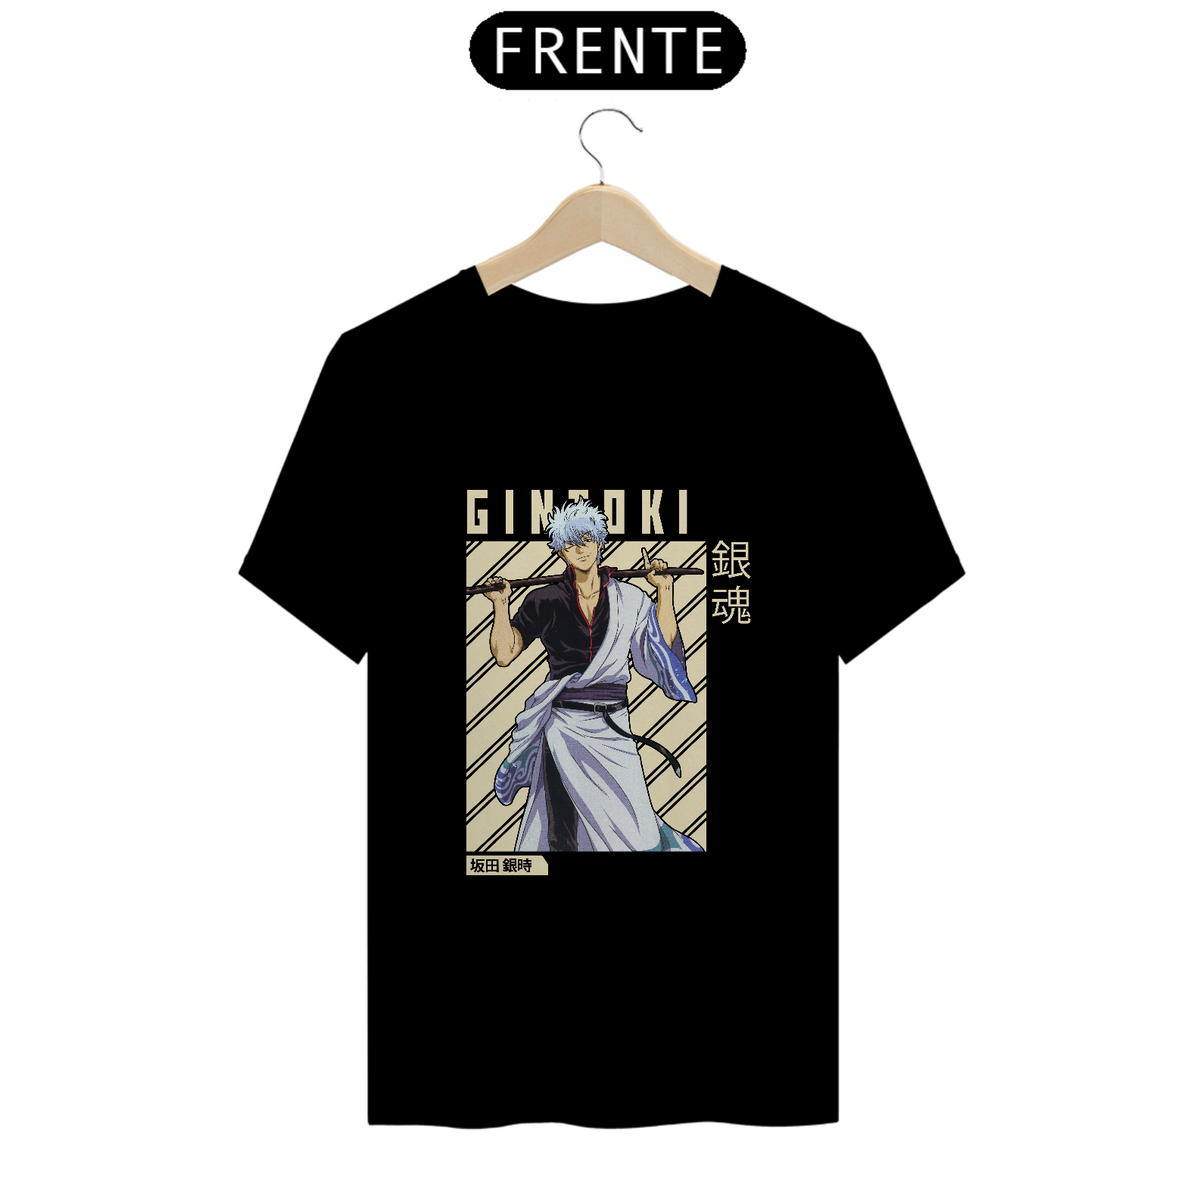 Nome do produto: Camisa Gintoki II